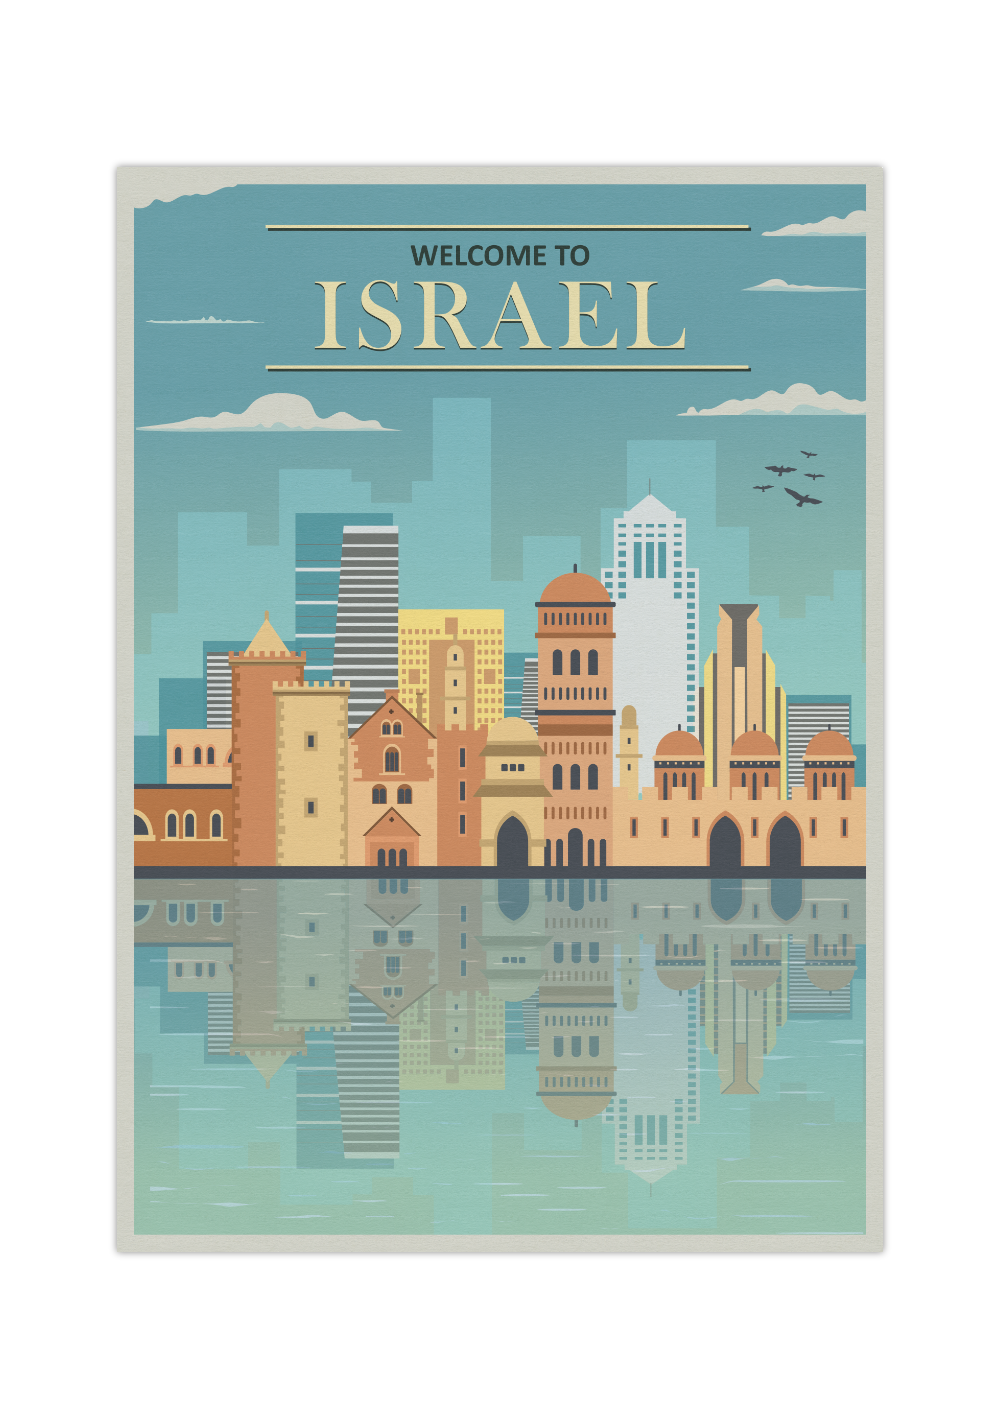 Das Vintage Poster zeigt dir eine retro Ansicht von Israel mit den Worten "Welcome to Isarael".